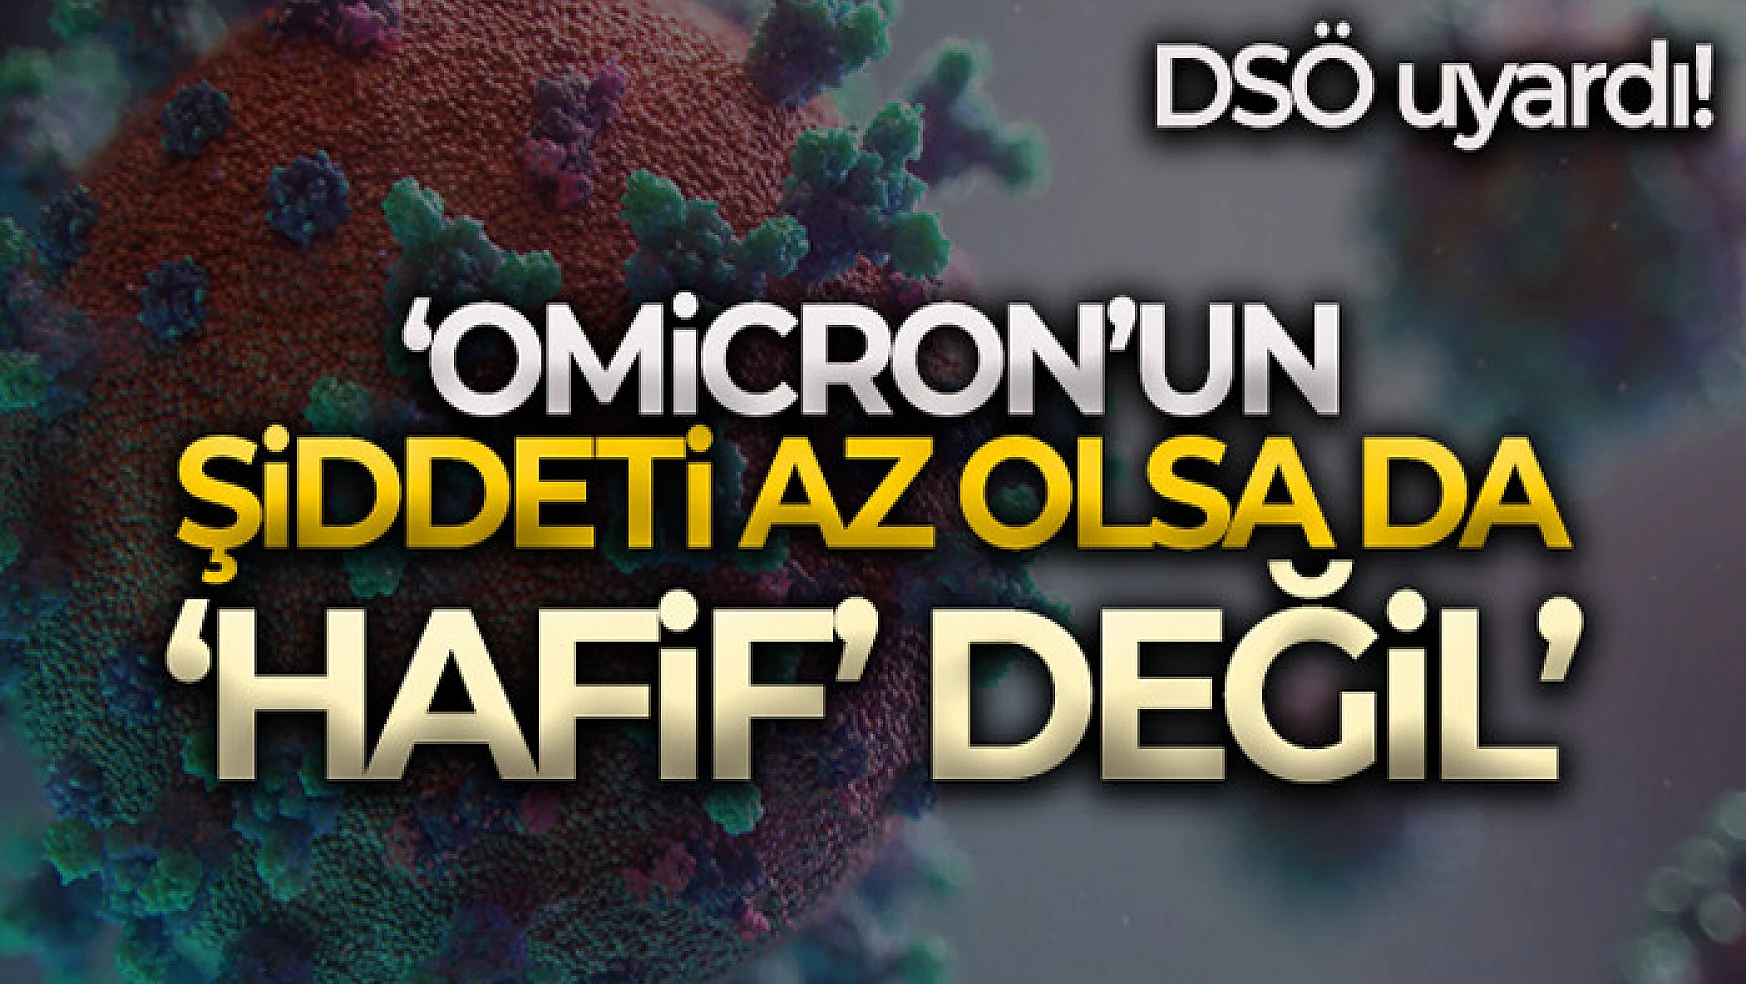 DSÖ: Omicron mutasyonu Delta'dan daha az şiddetli olsa da 'hafif' değil